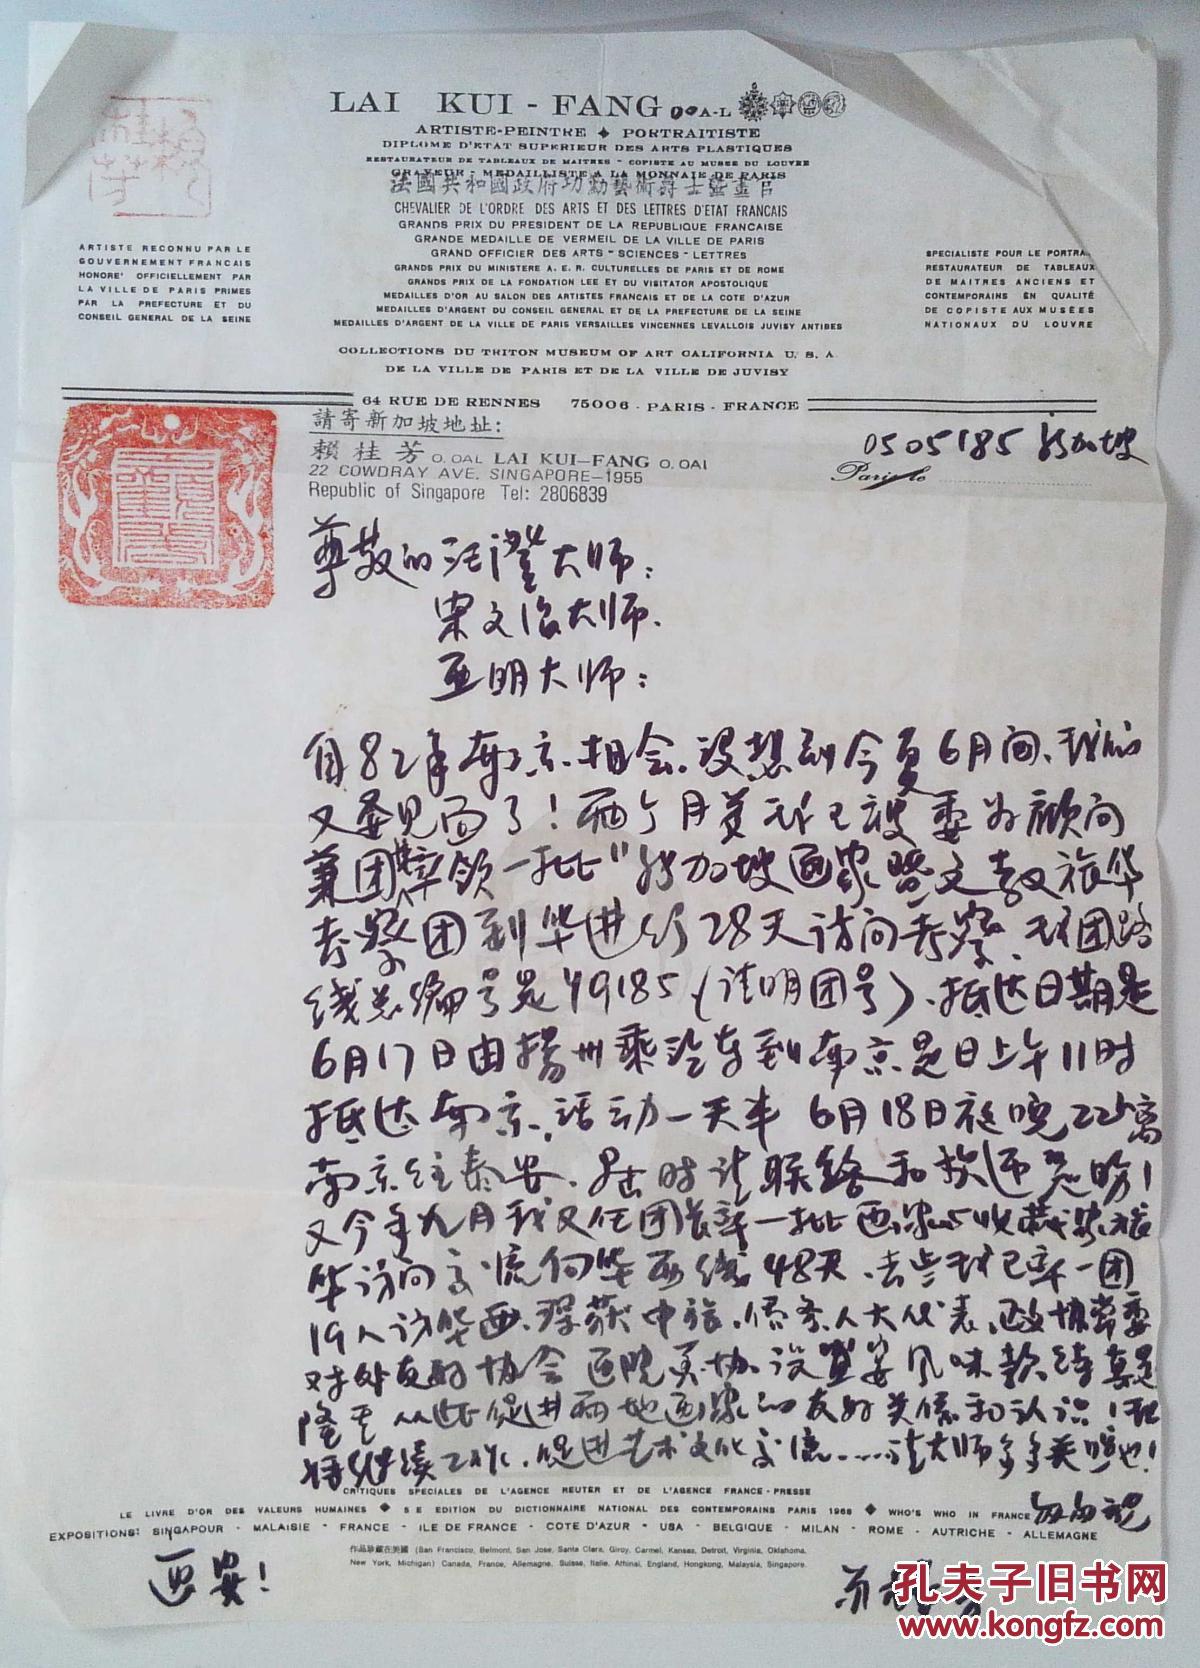 赖桂芳 写给南京书画院副院长 玄武湖画院院长 汪澄的信